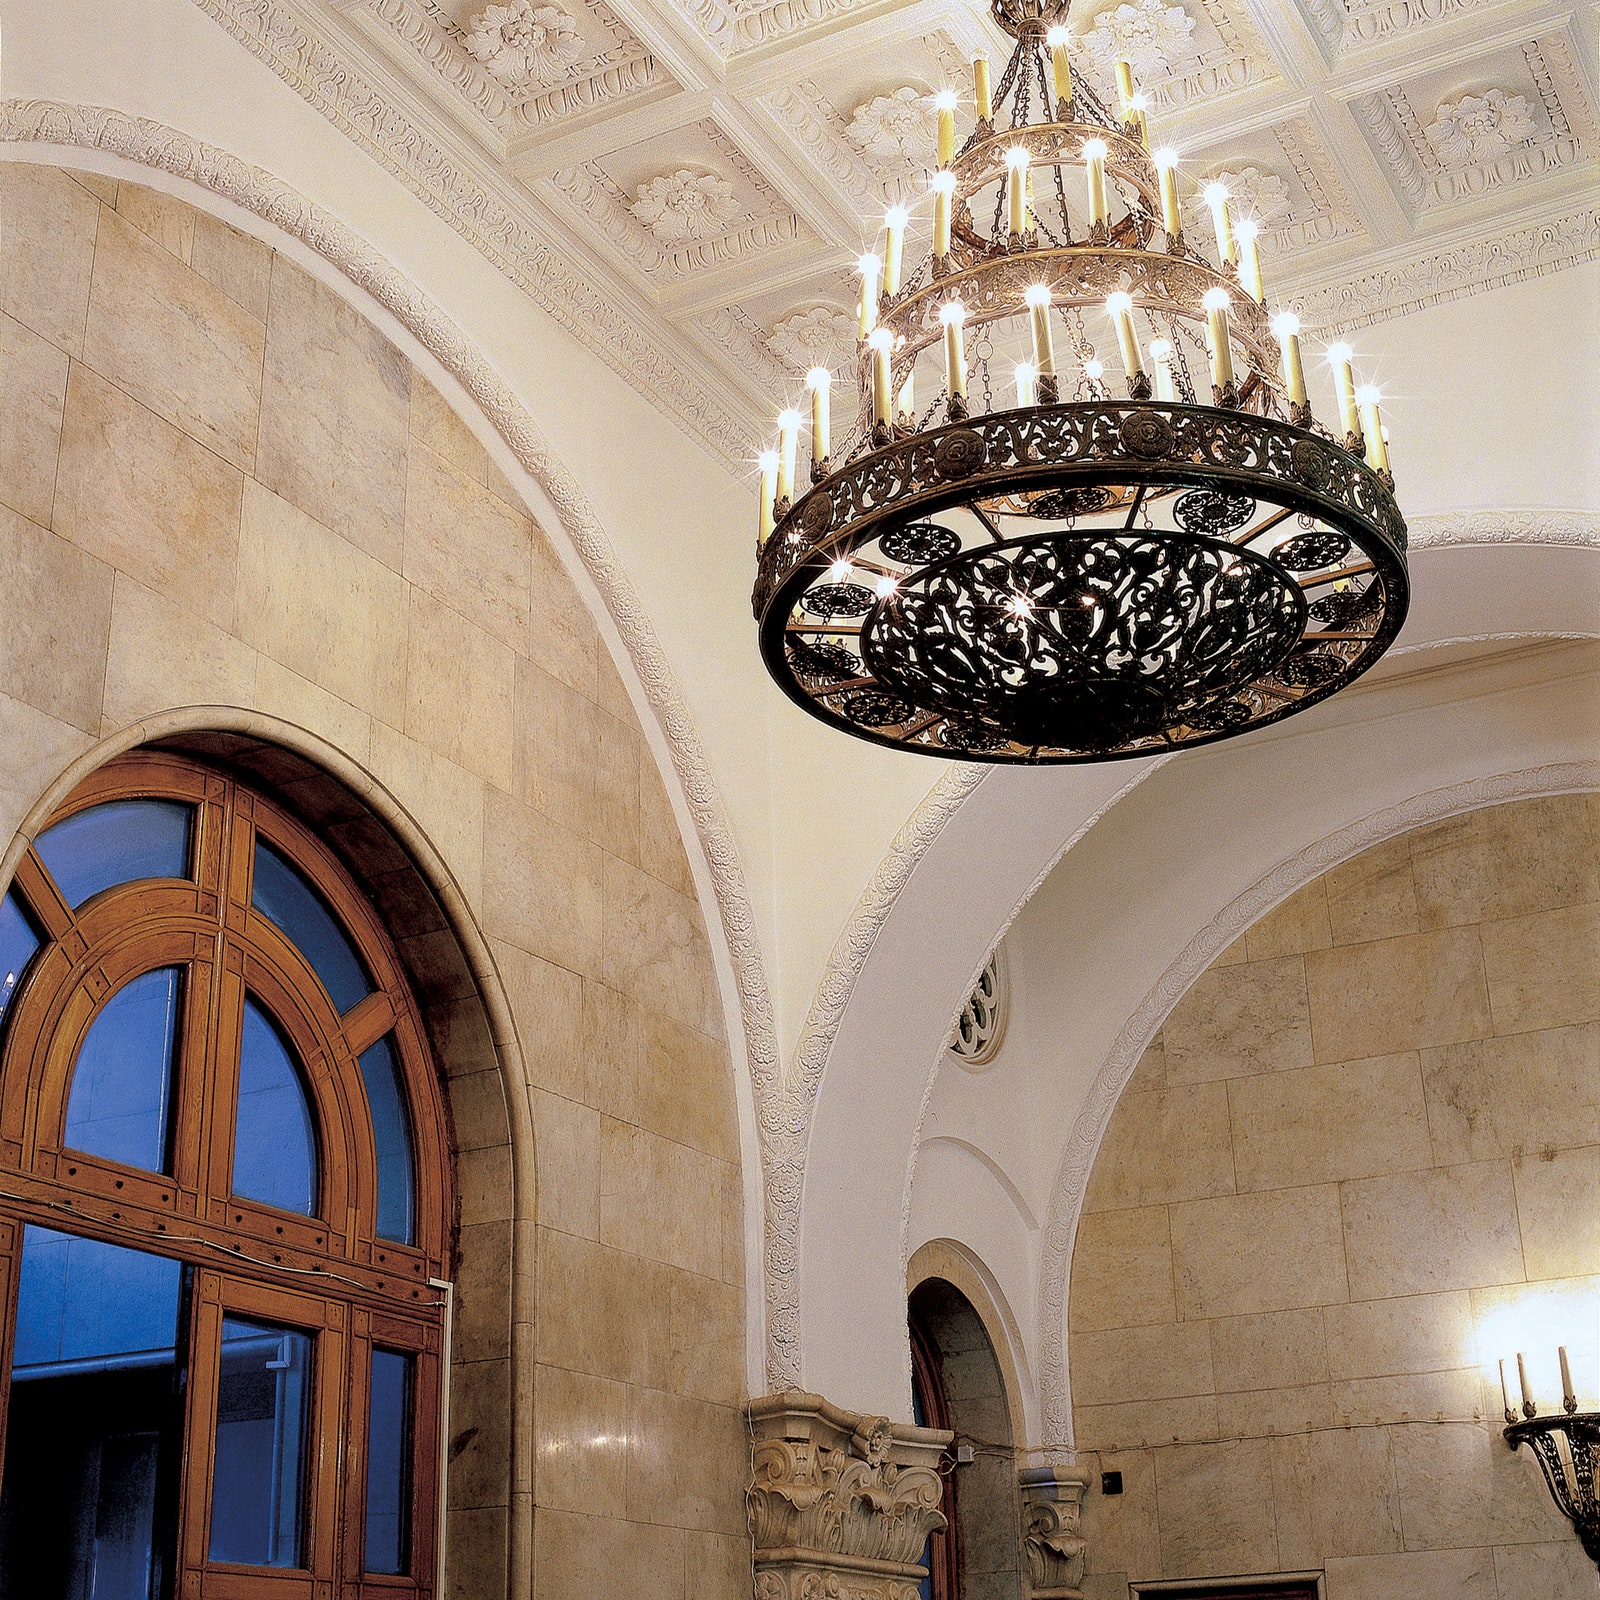 Холл высотки на Кудринской площади отделан мрамором высокие арочные двери — дубовые потолок украшен гипсовой лепниной.